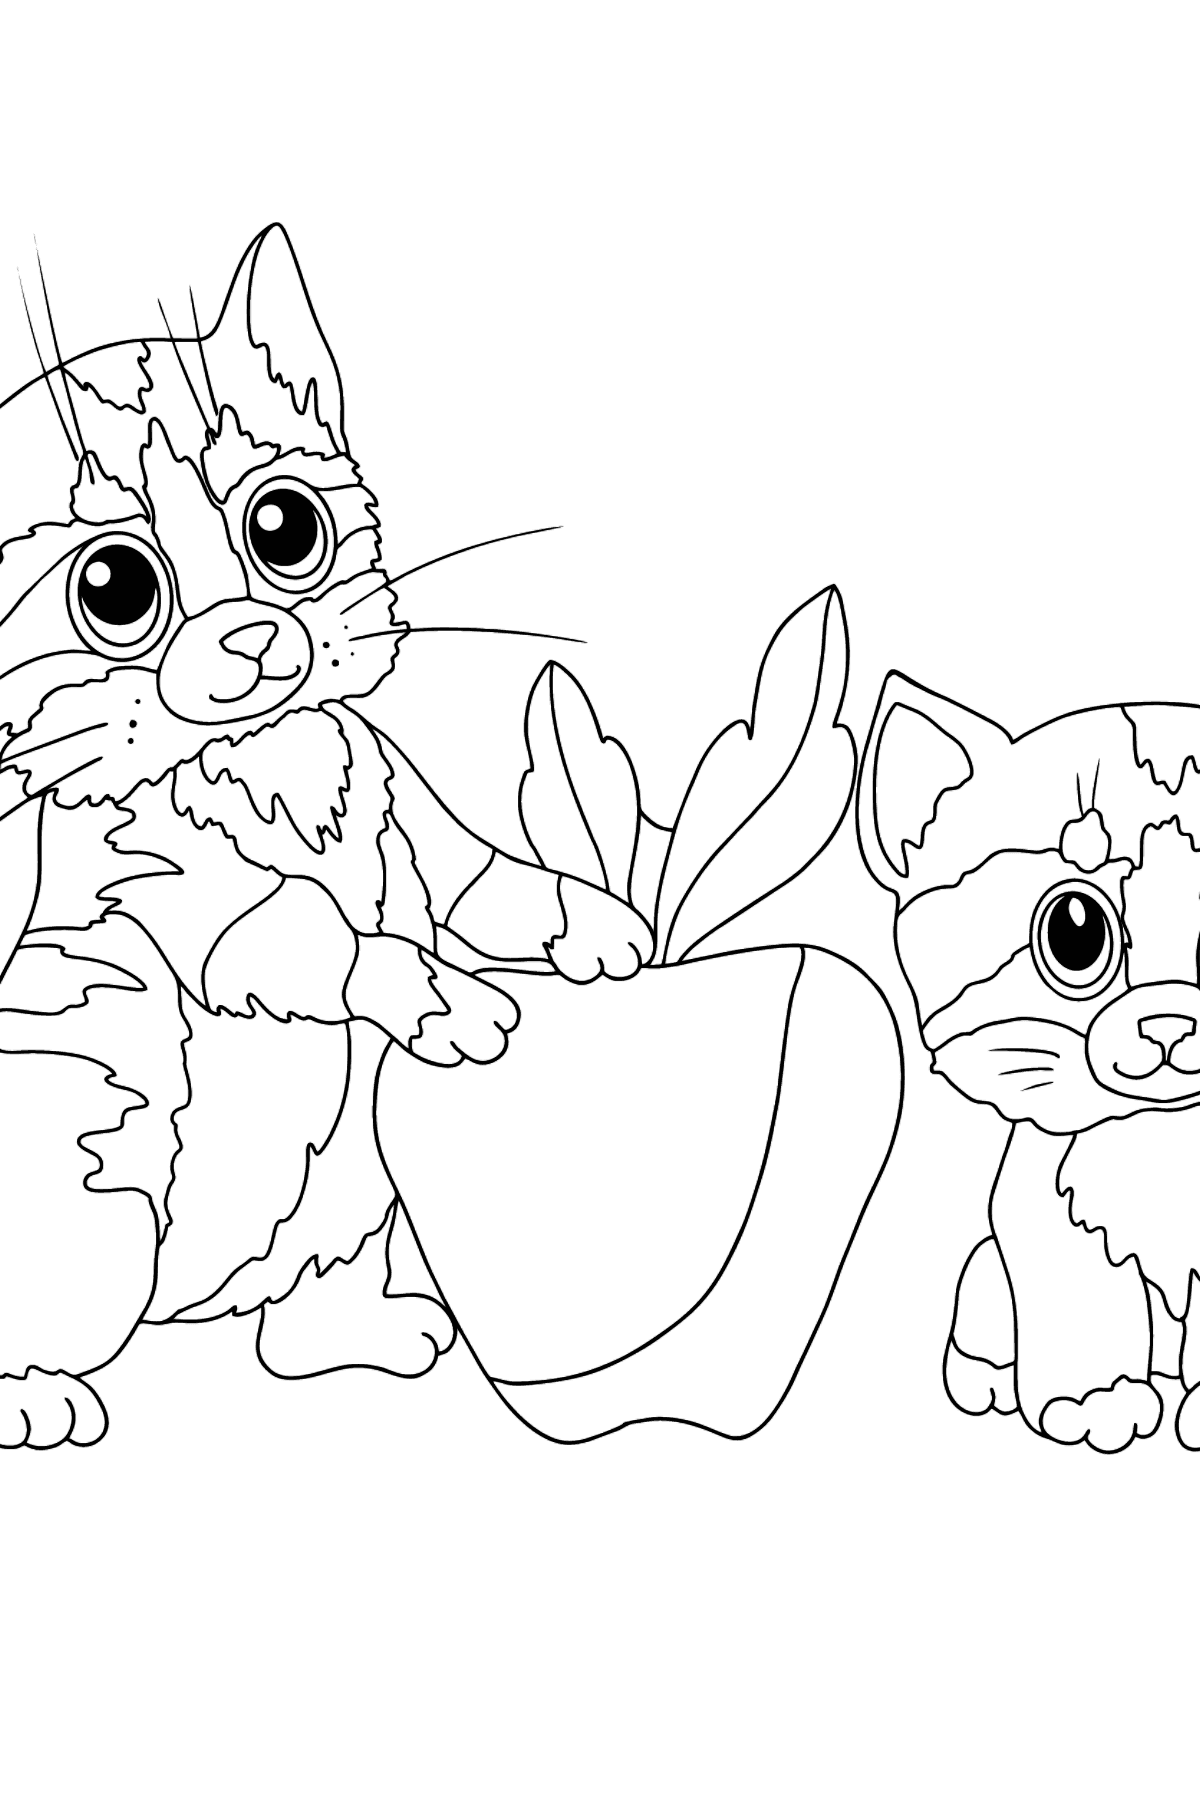 Dibujo de Gatitos para colorear - Dibujos para Colorear para Niños